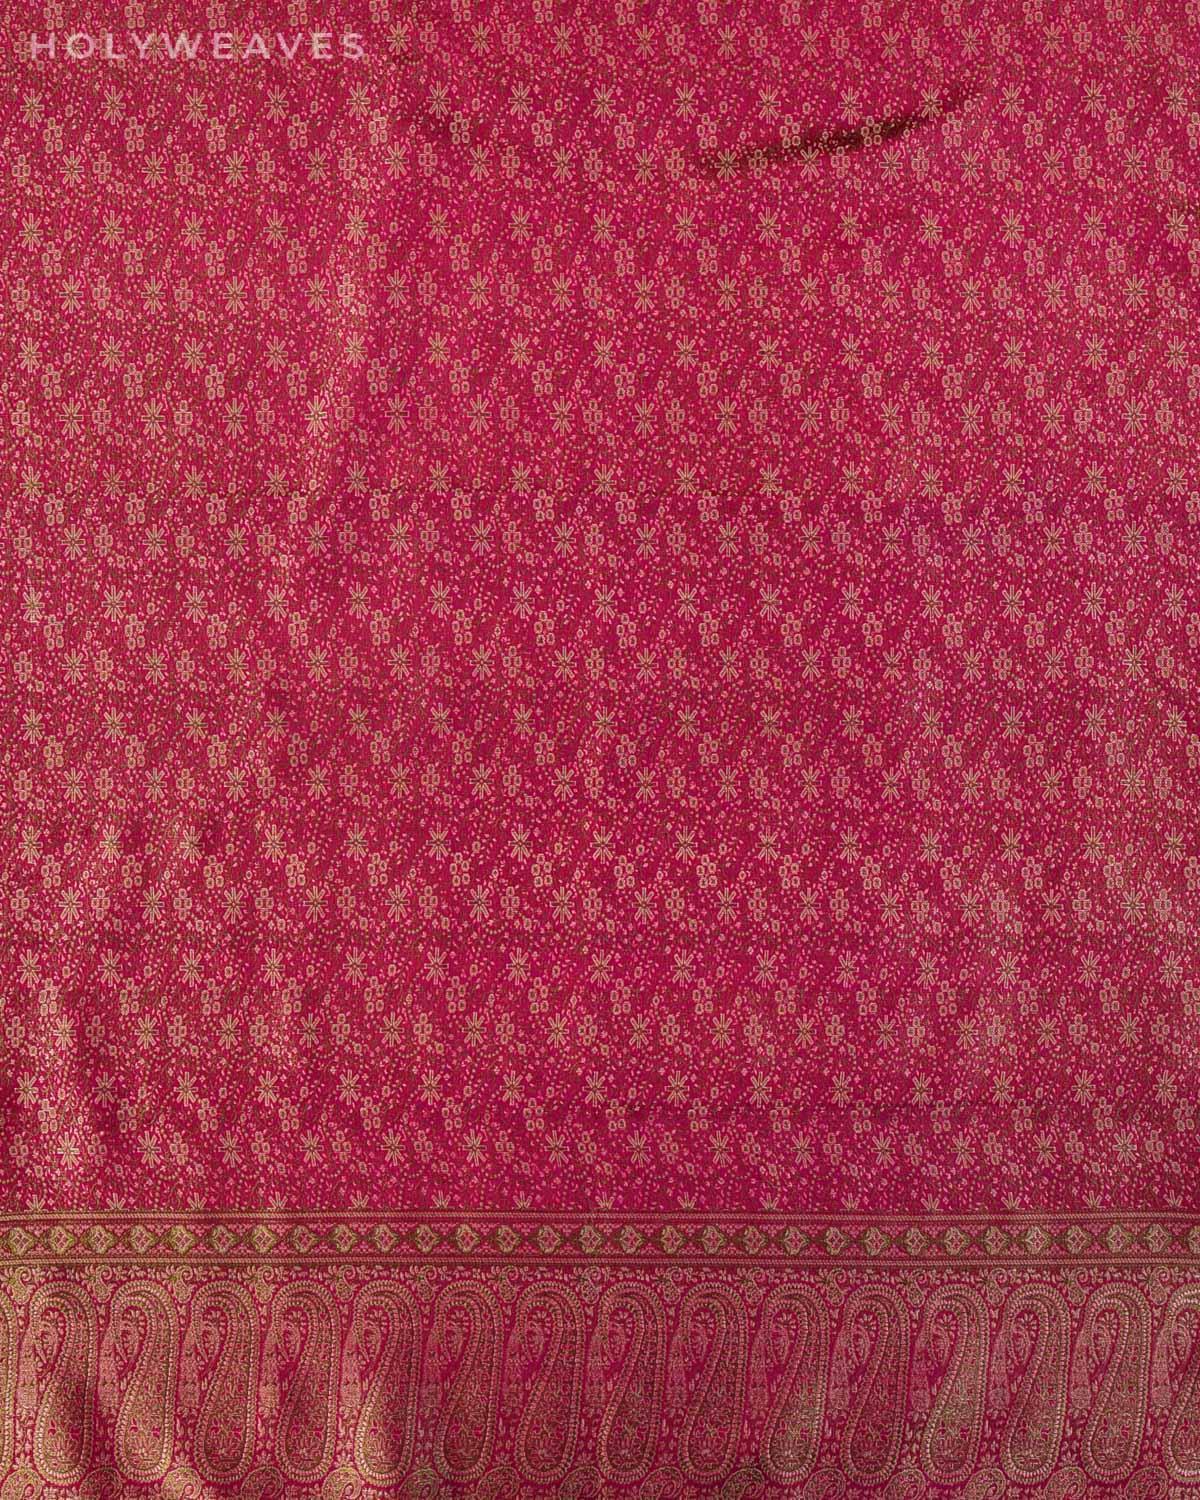 Shot Purple Banarasi Jamawar Handwoven Silk Scarf 72"x21" - By HolyWeaves, Benares